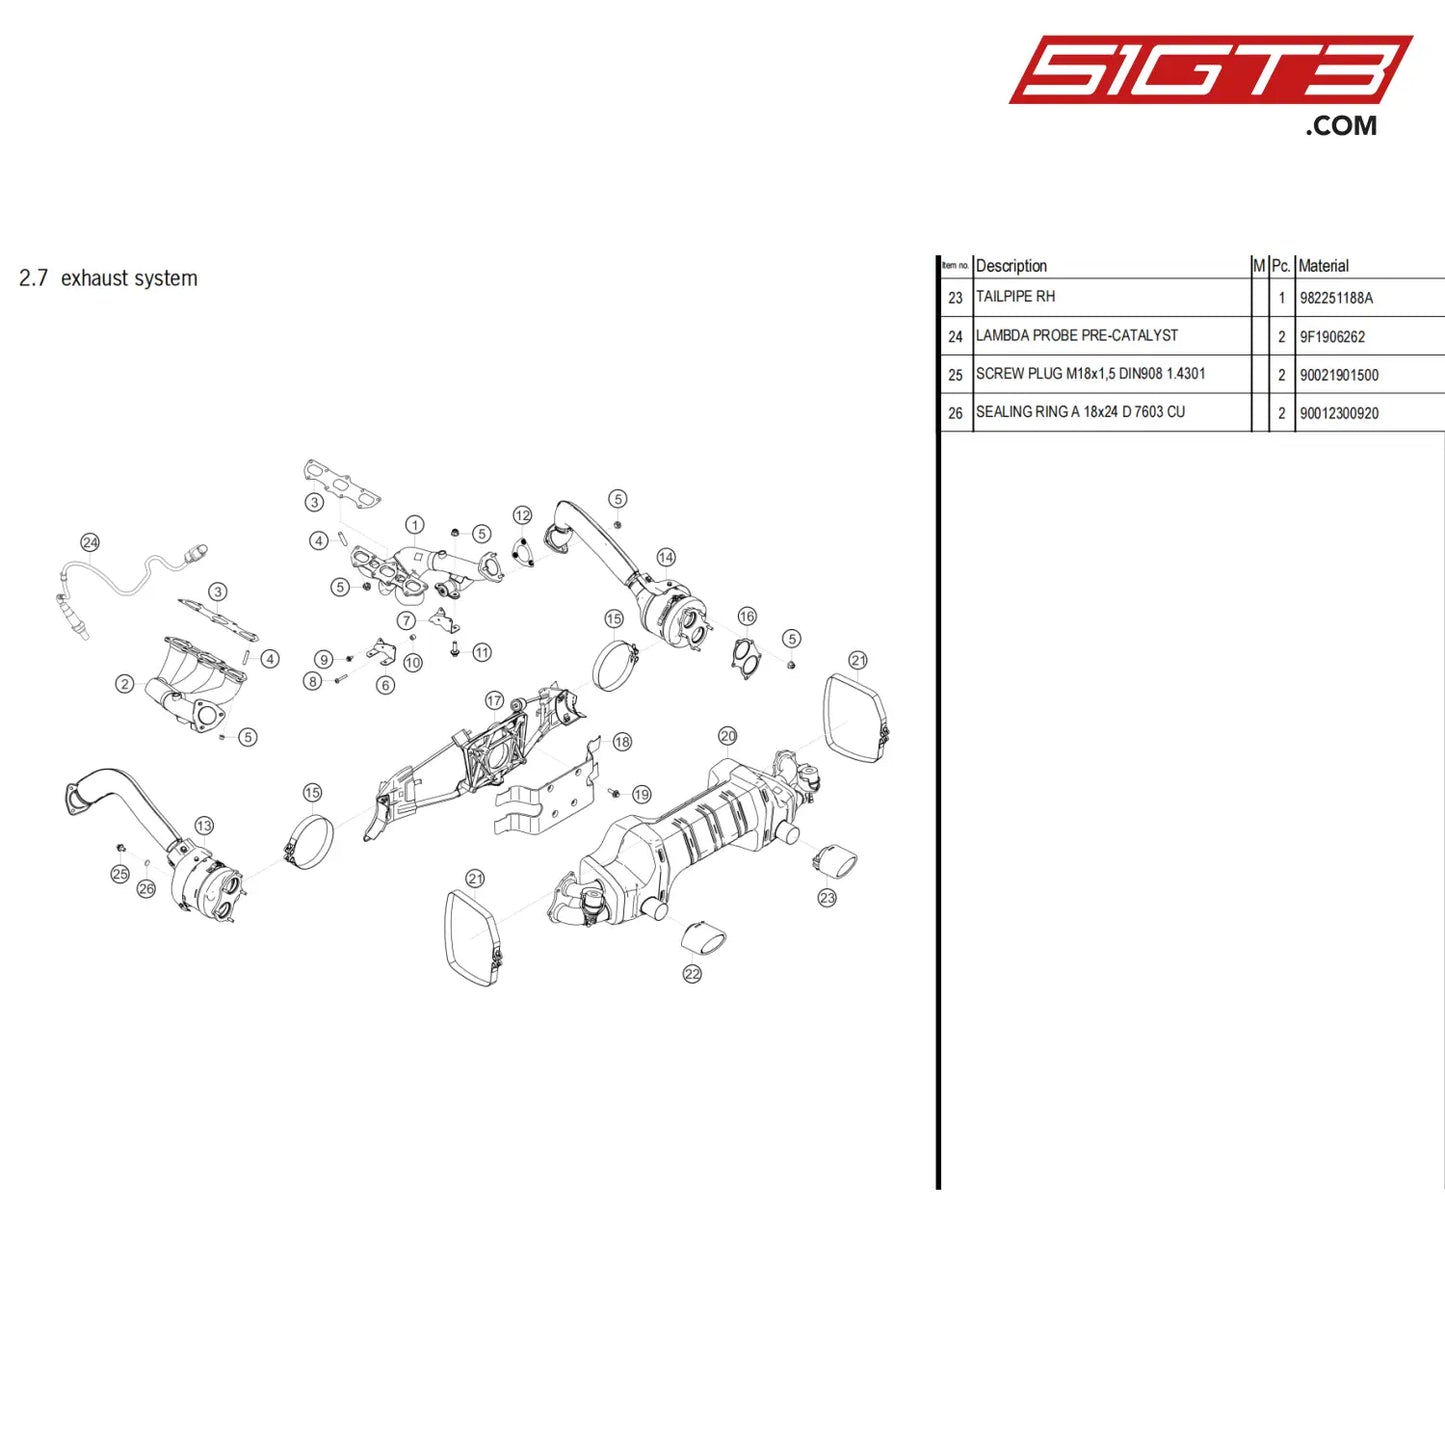 Sealing Ring A 18X24 D 7603 Cu - 90012300920 [Porsche 718 Cayman Gt4 Clubsport] Exhaust System